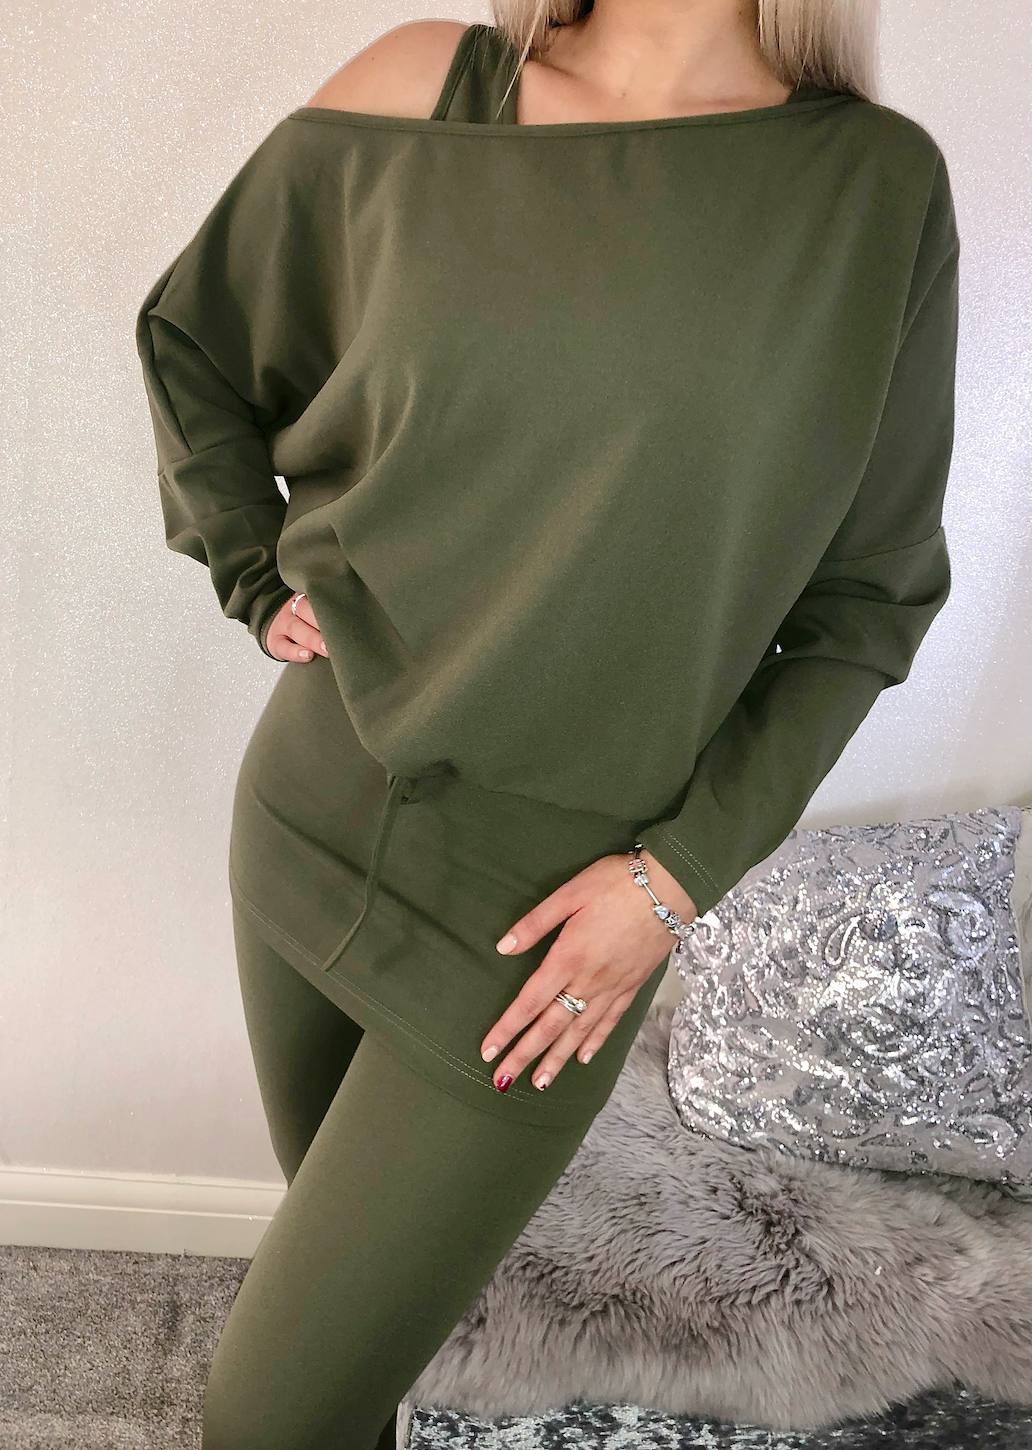 Paige 3pcs Khaki Off The Shoulder Loungewear Set – By Sophie Louise Boutique